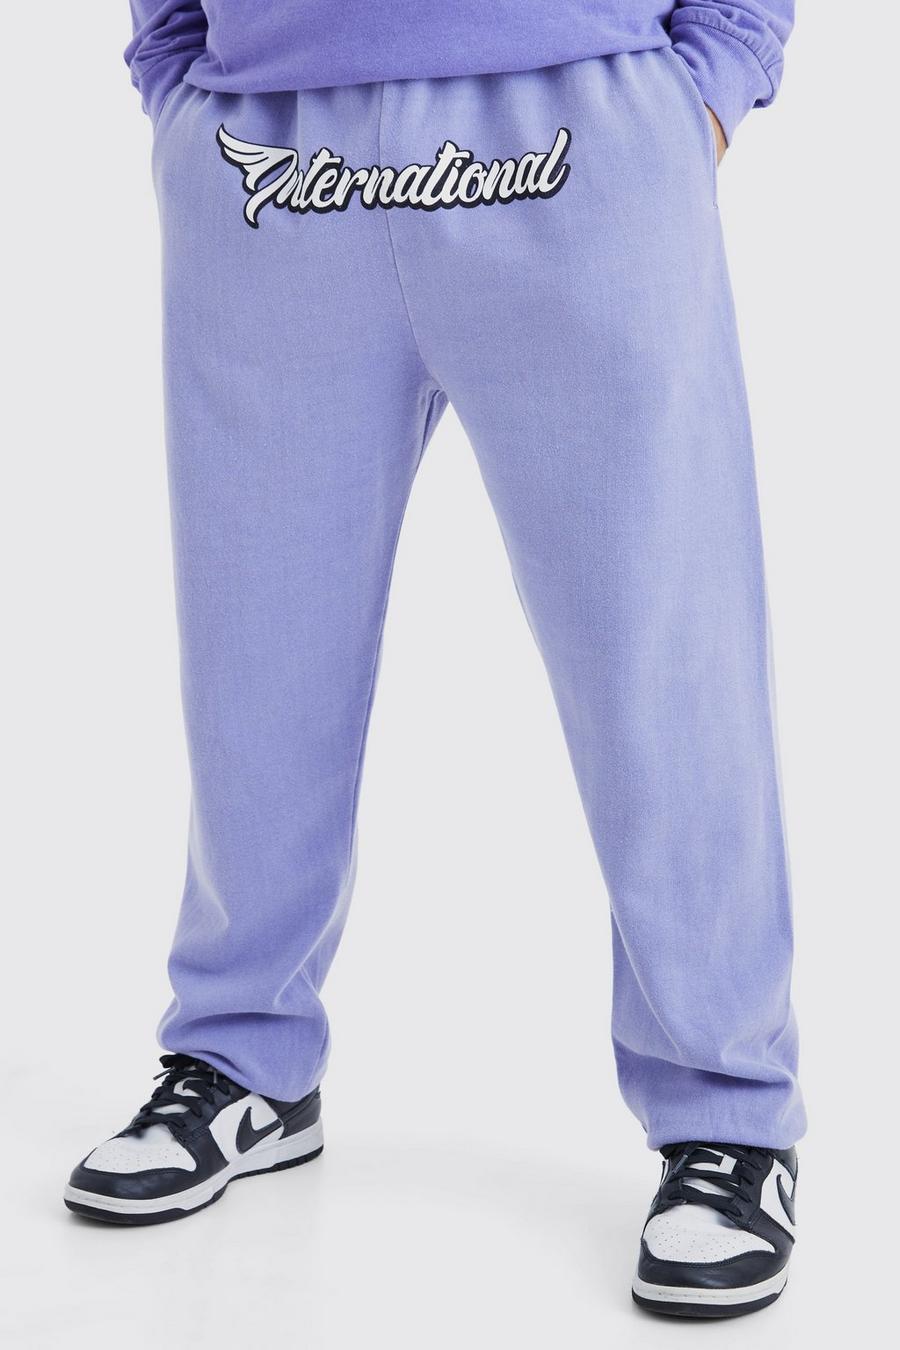 Pantalón deportivo oversize con estampado gráfico Worldwide en la entrepierna, Purple